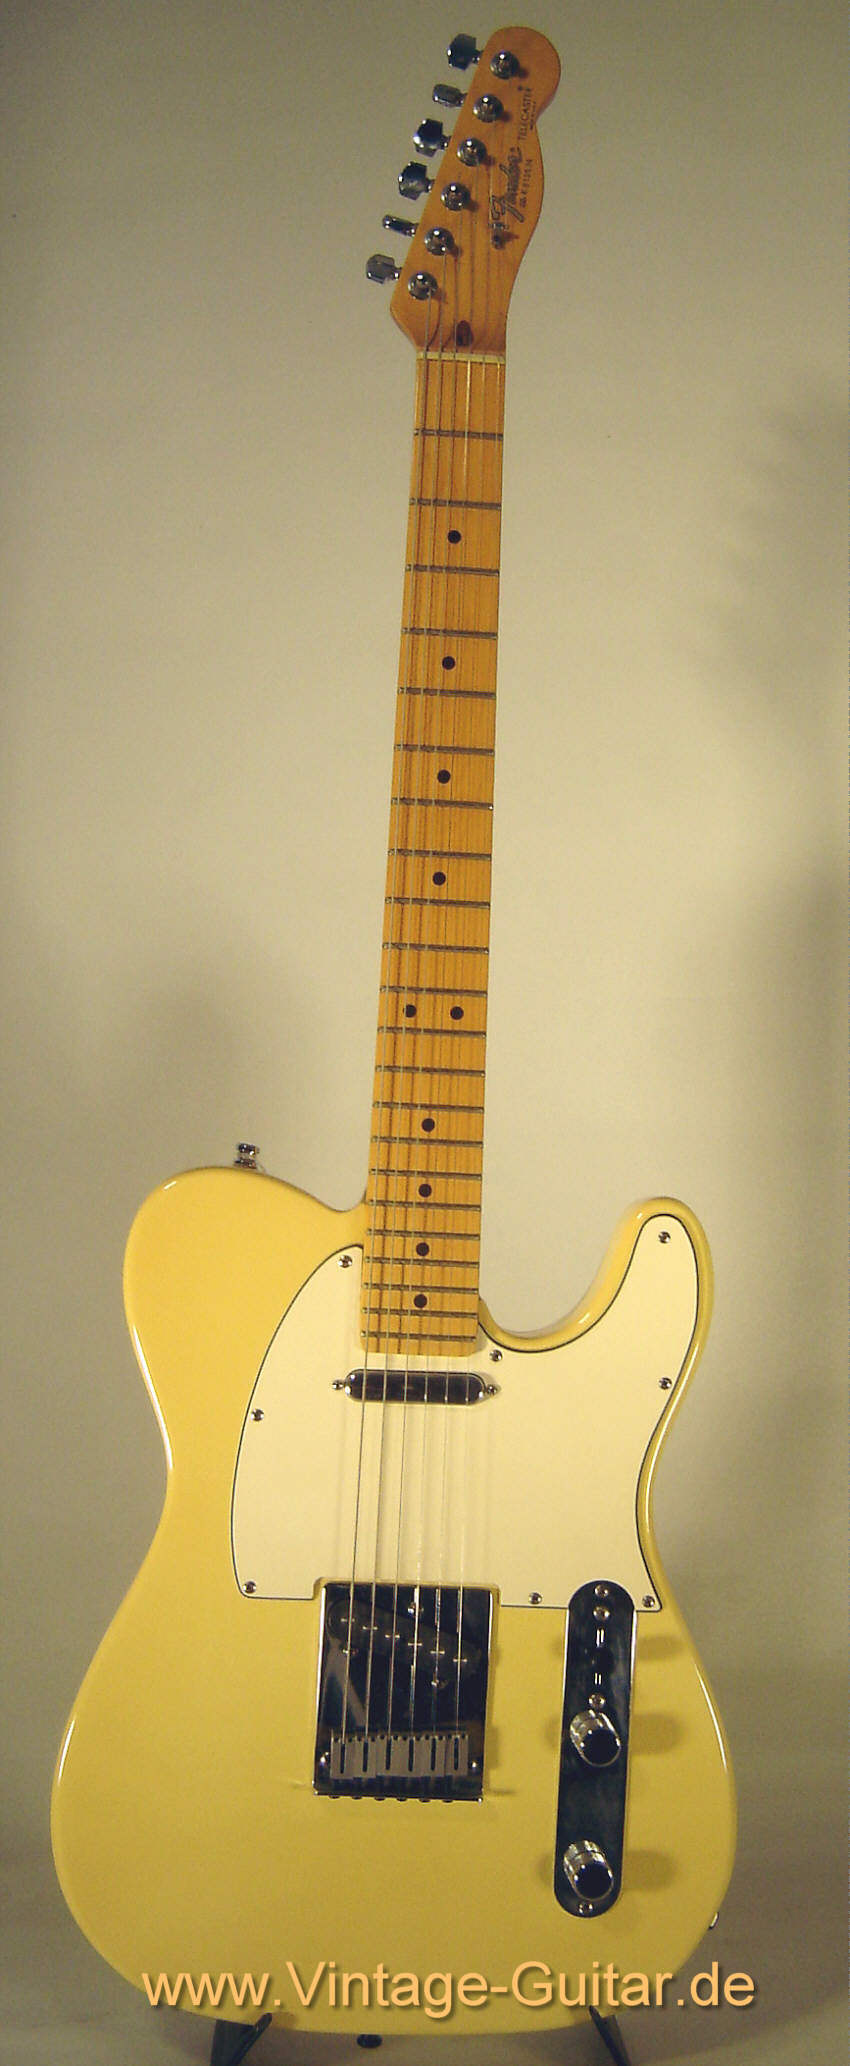 Fender Telecaster 1989 white 1.jpg